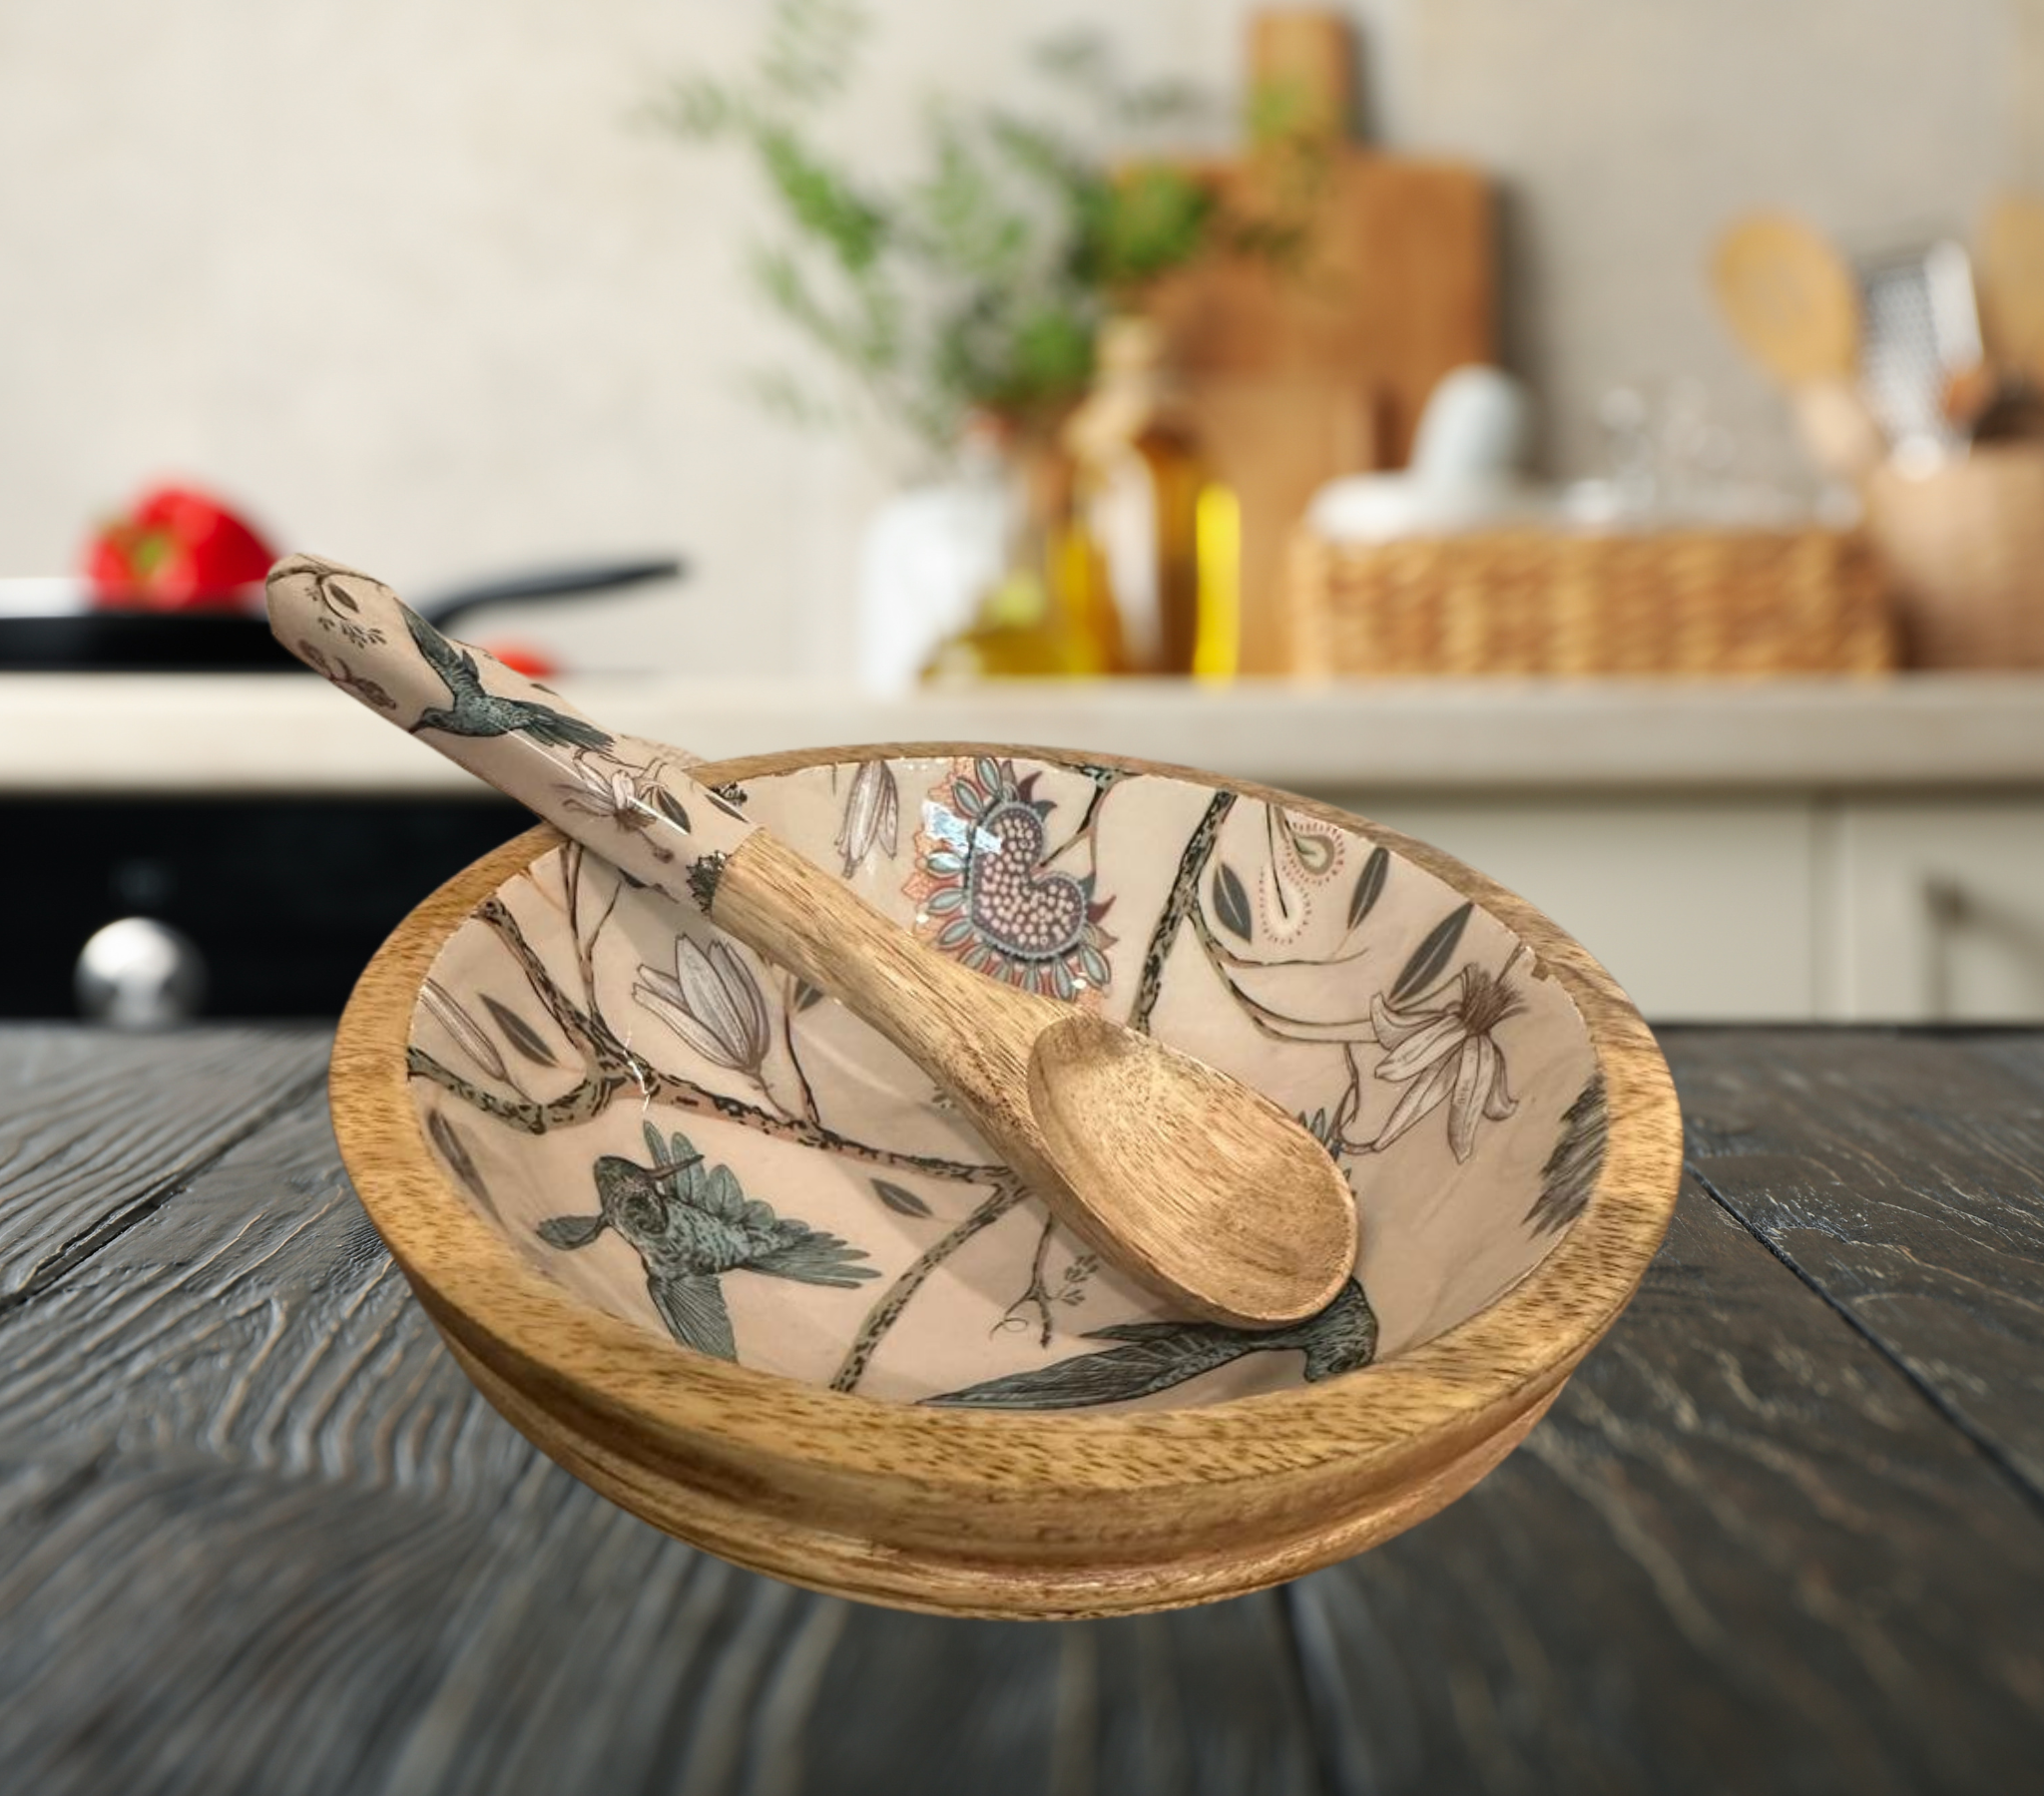 Wholesale Mango wood serving bowl set for your store - Faire